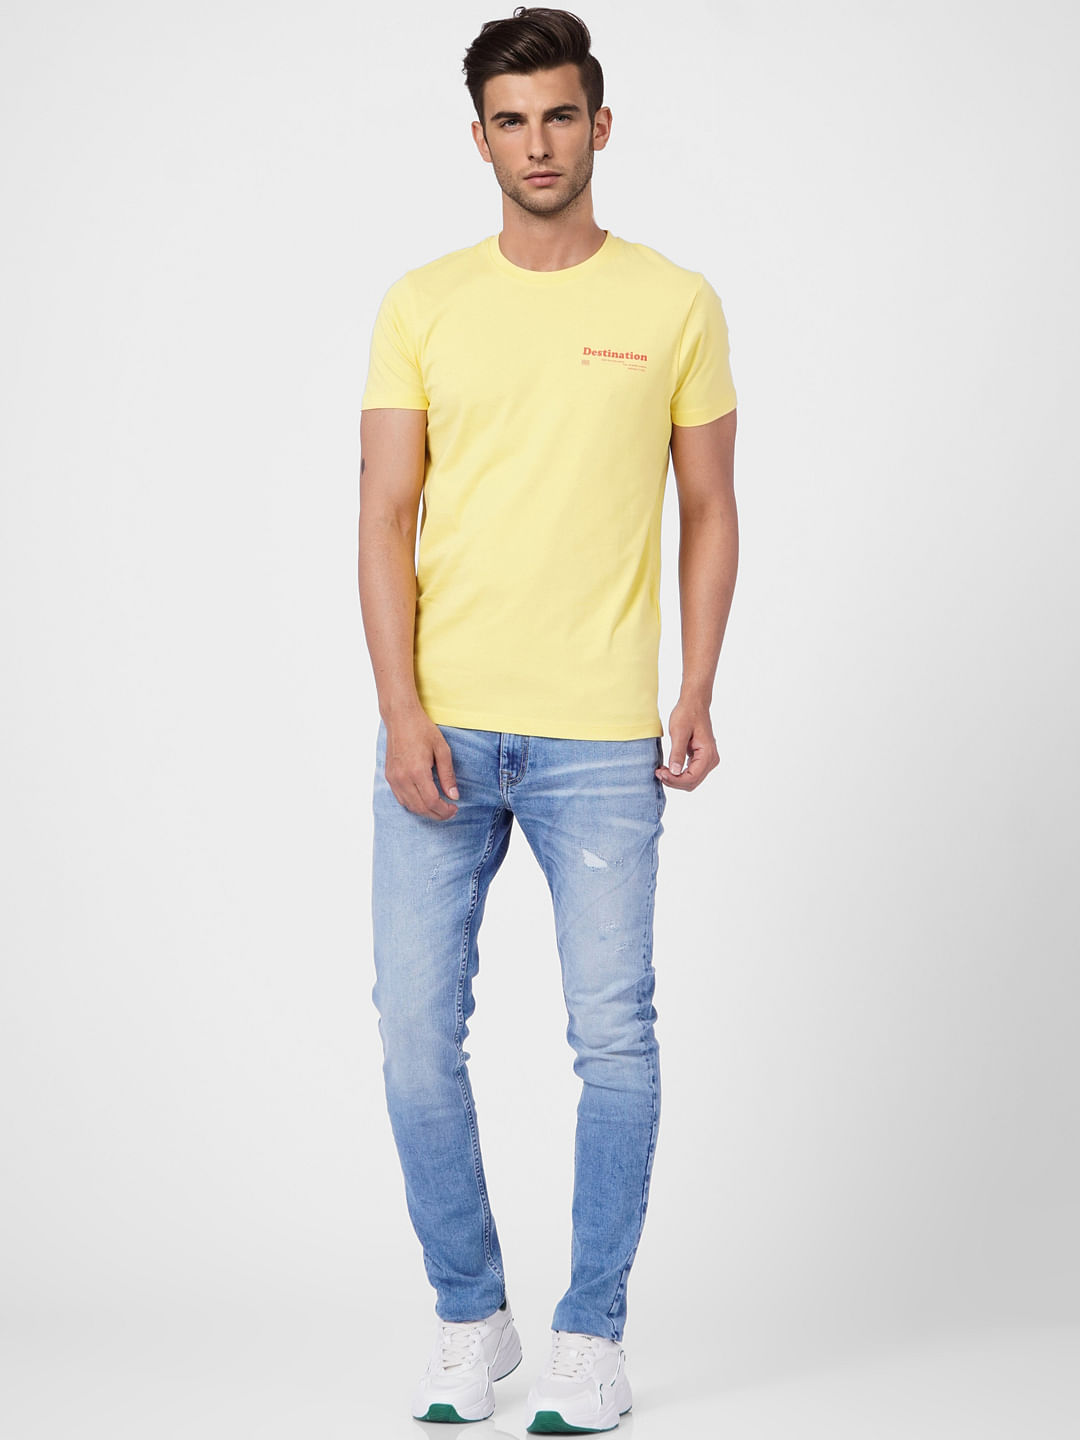 Yellow T Shirt Mockup - Free Vectors & PSDs to Download